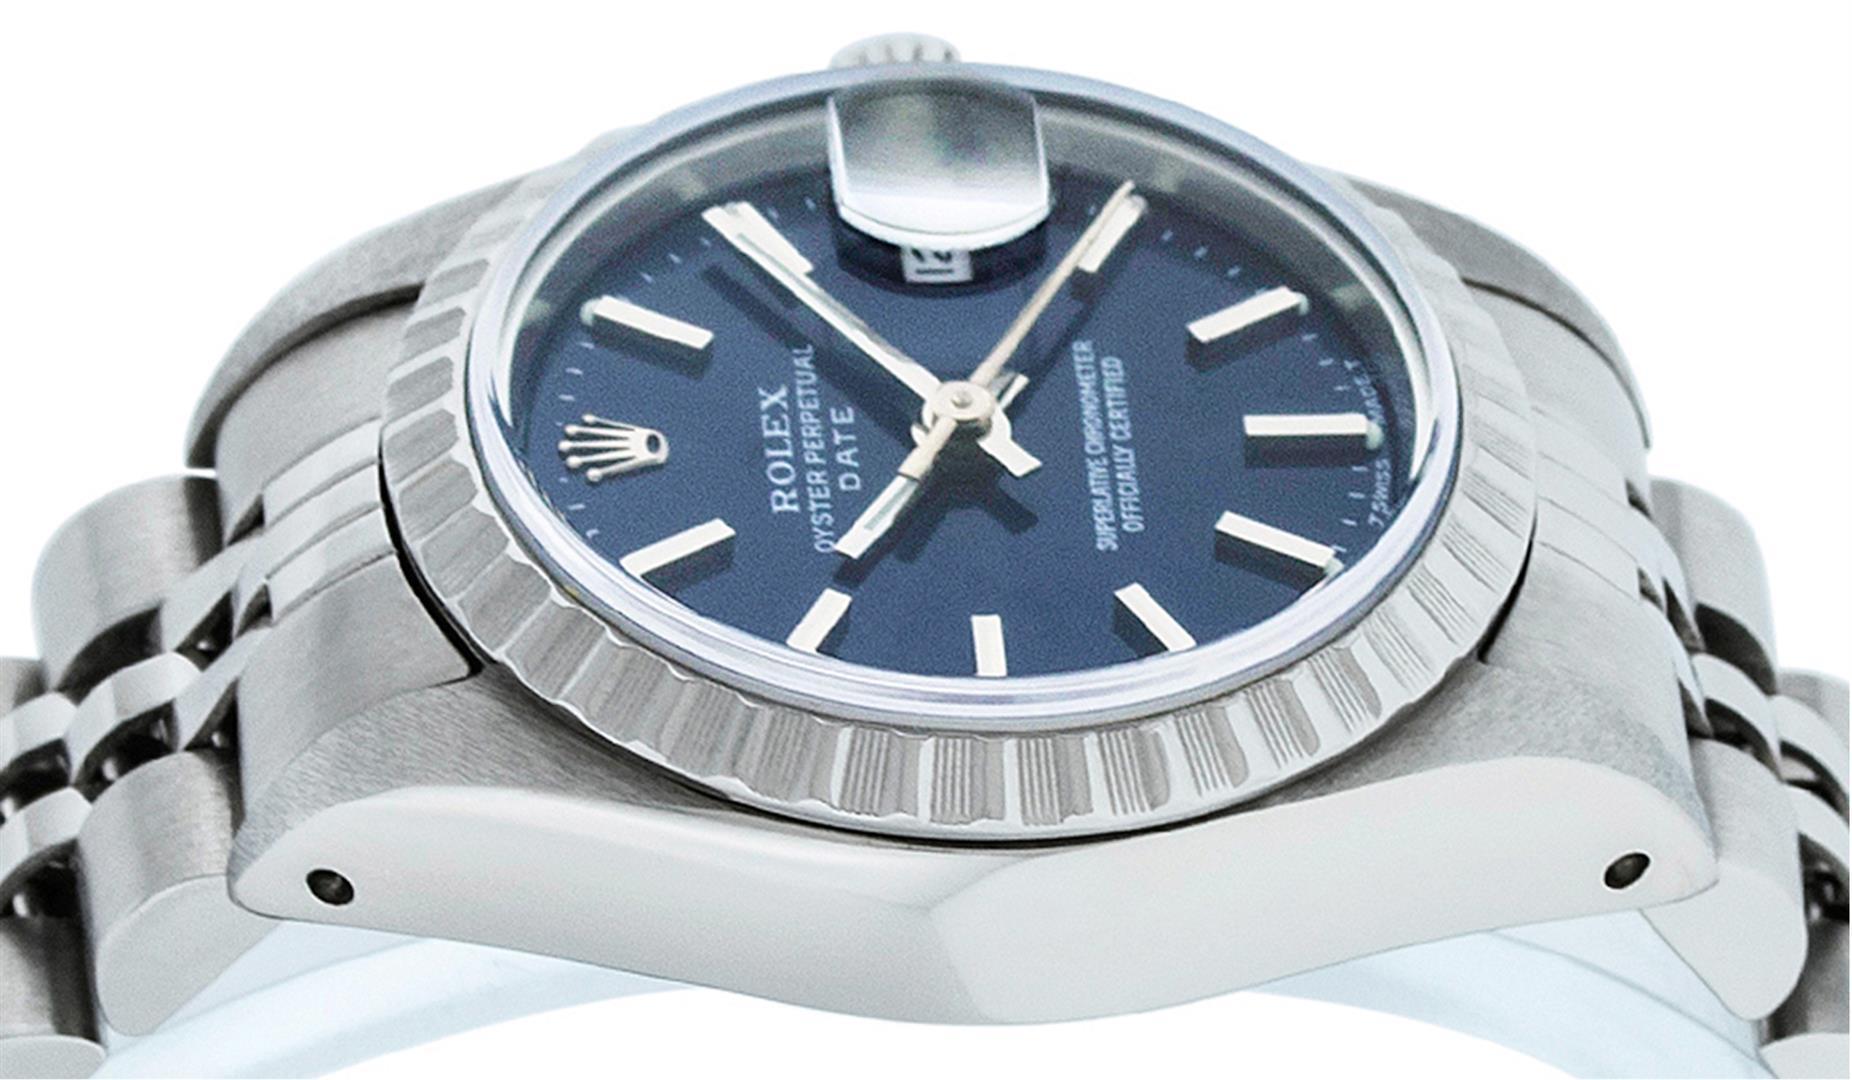 Rolex Ladies Quickset Stainless Steel Blue Index 26MM Date Wristwatch